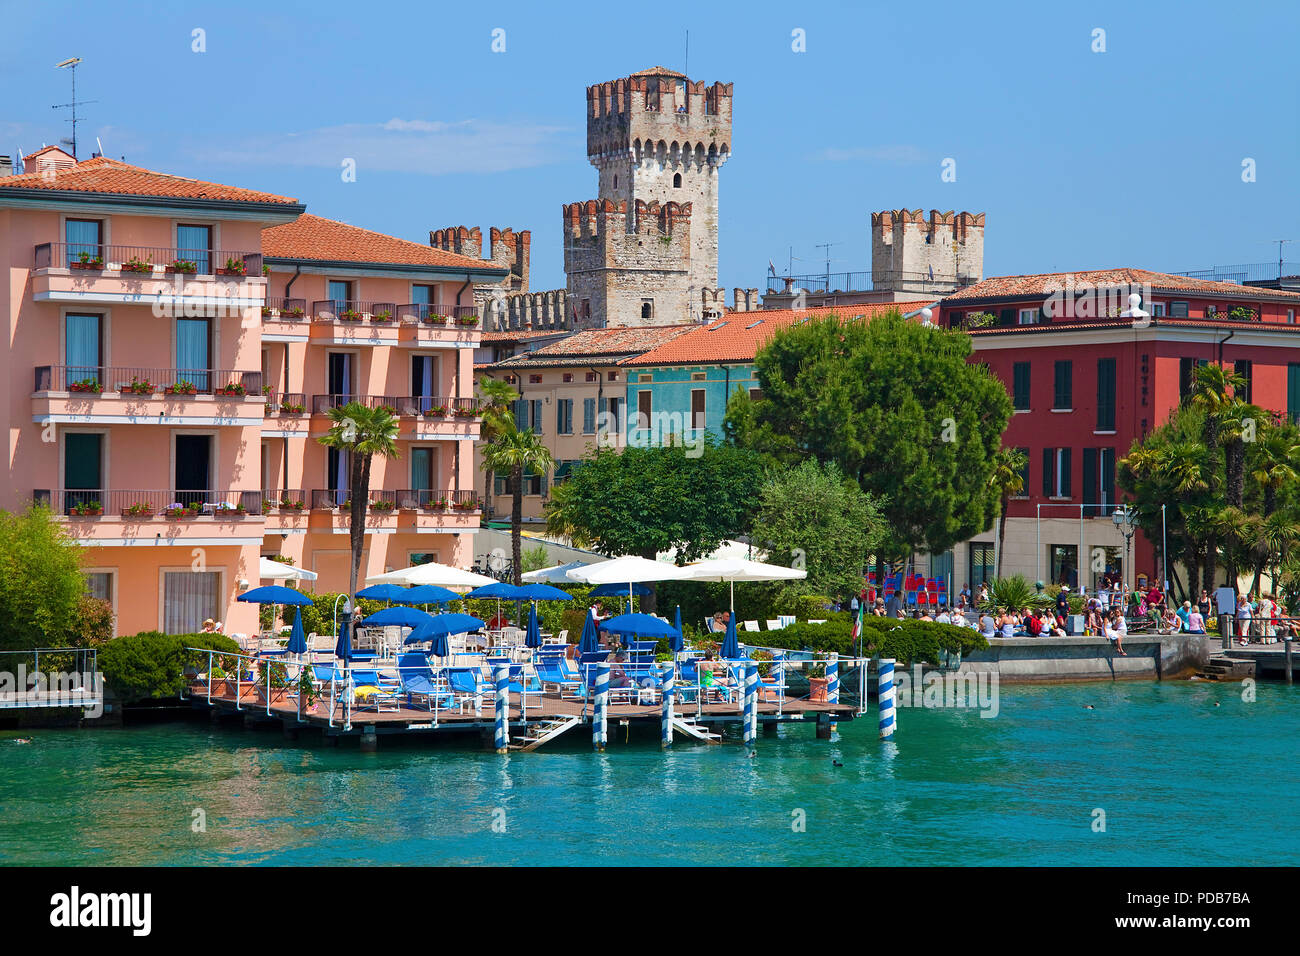 Restaurant an einem Dock am Lakeside, Scaliger Burg, Wahrzeichen von Sirmione, Gardasee, Lombardei, Italien Stockfoto